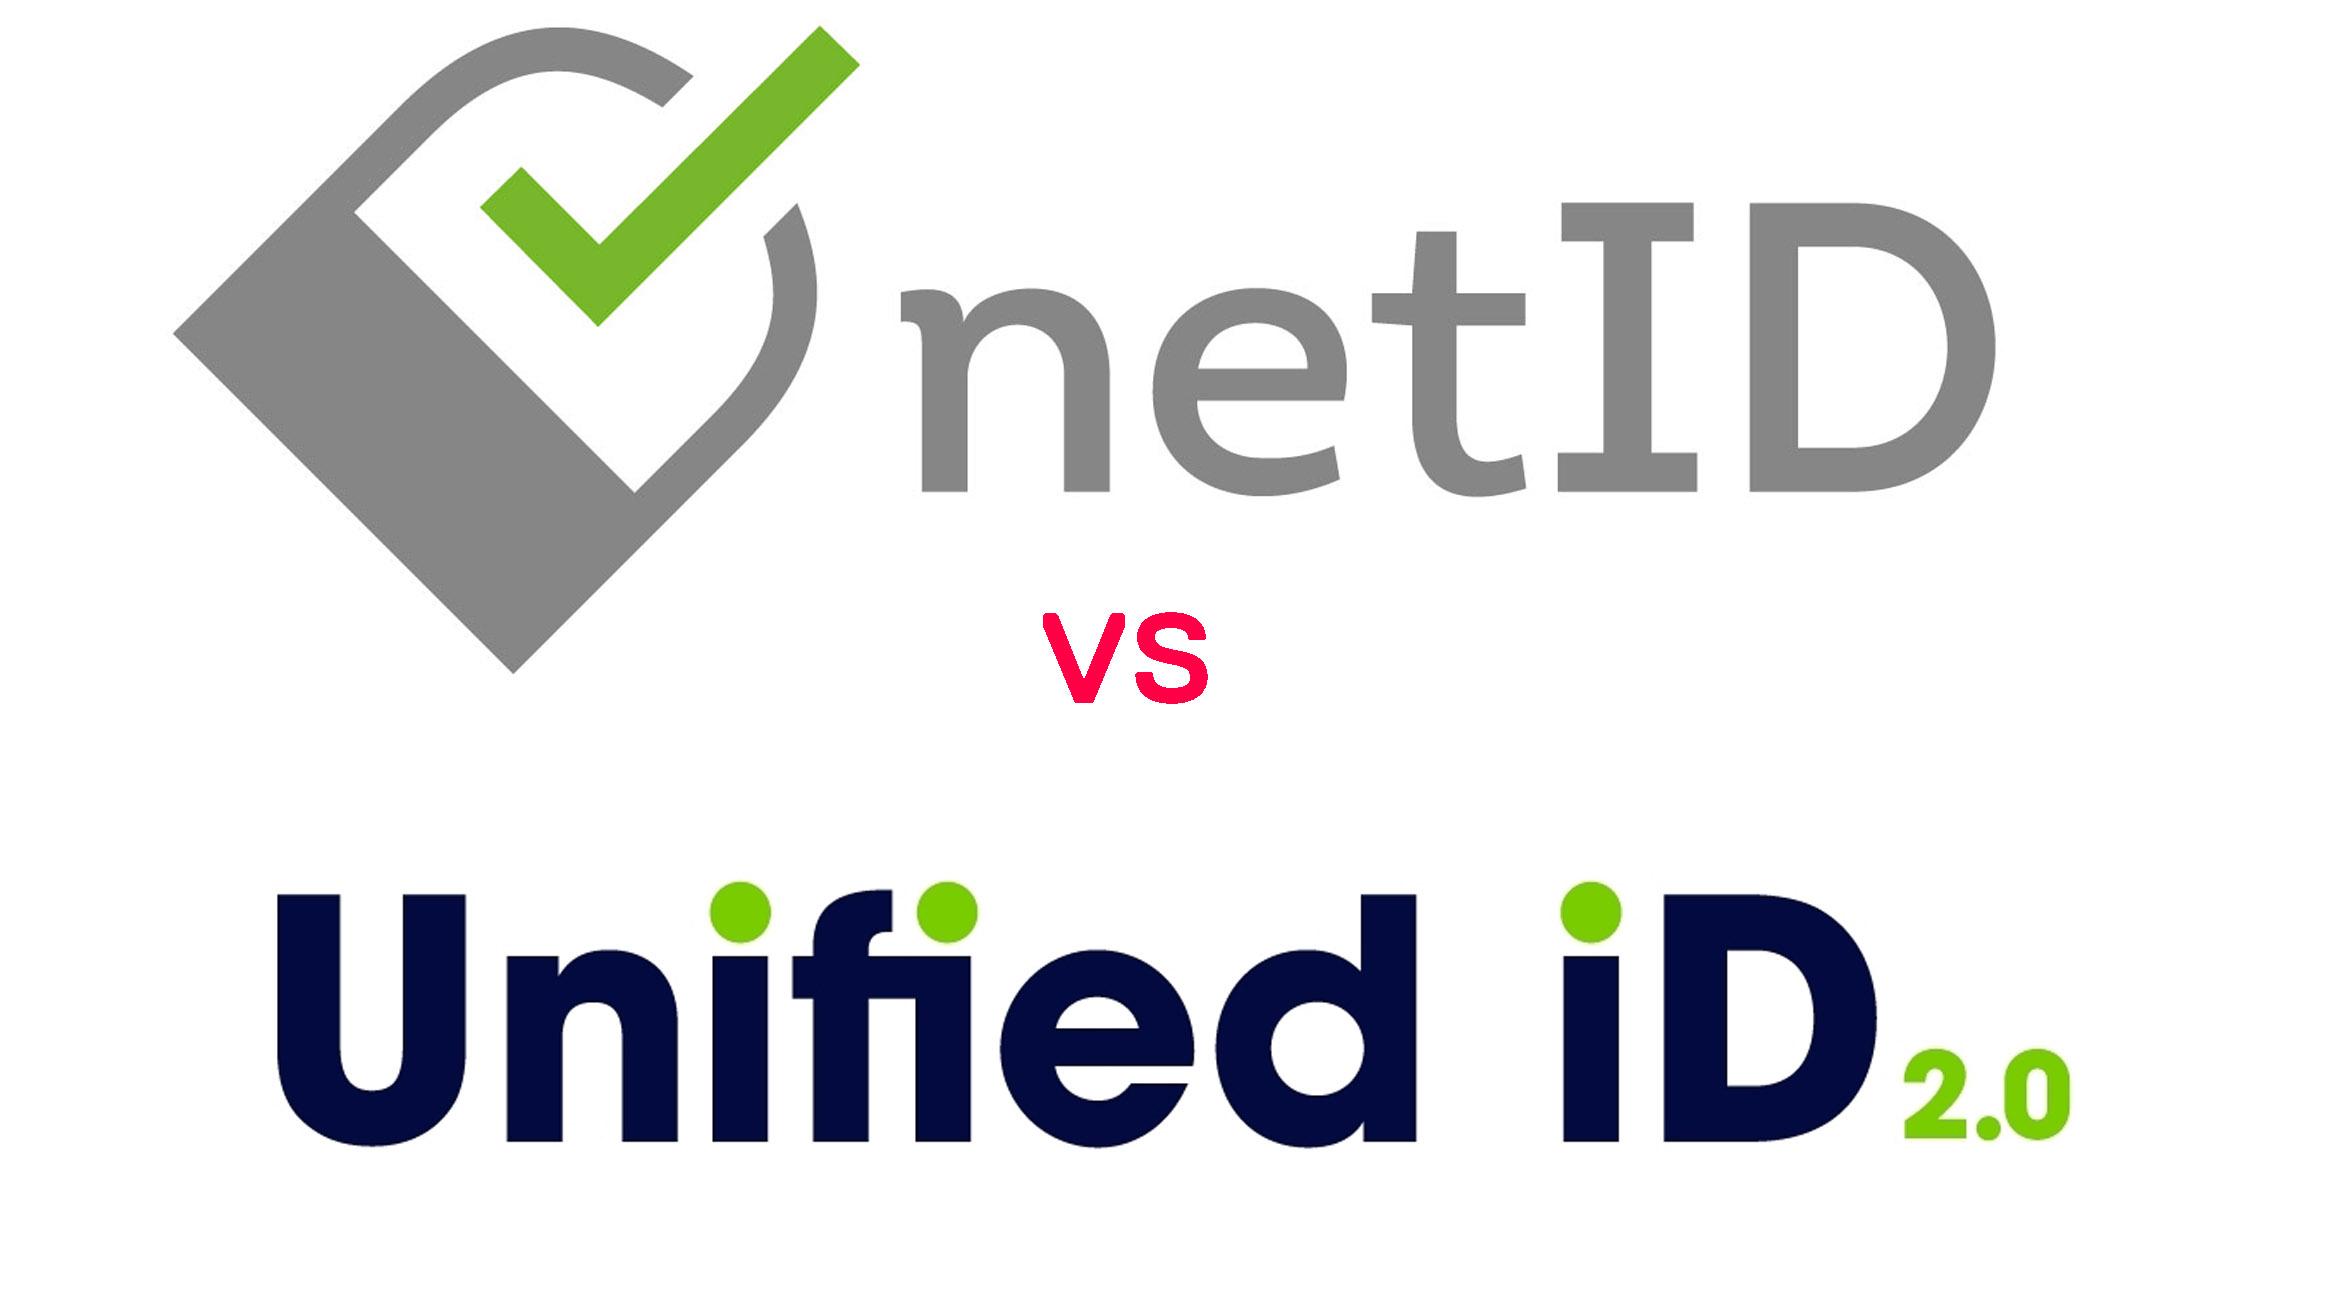 NetID versus Unified ID 2.0